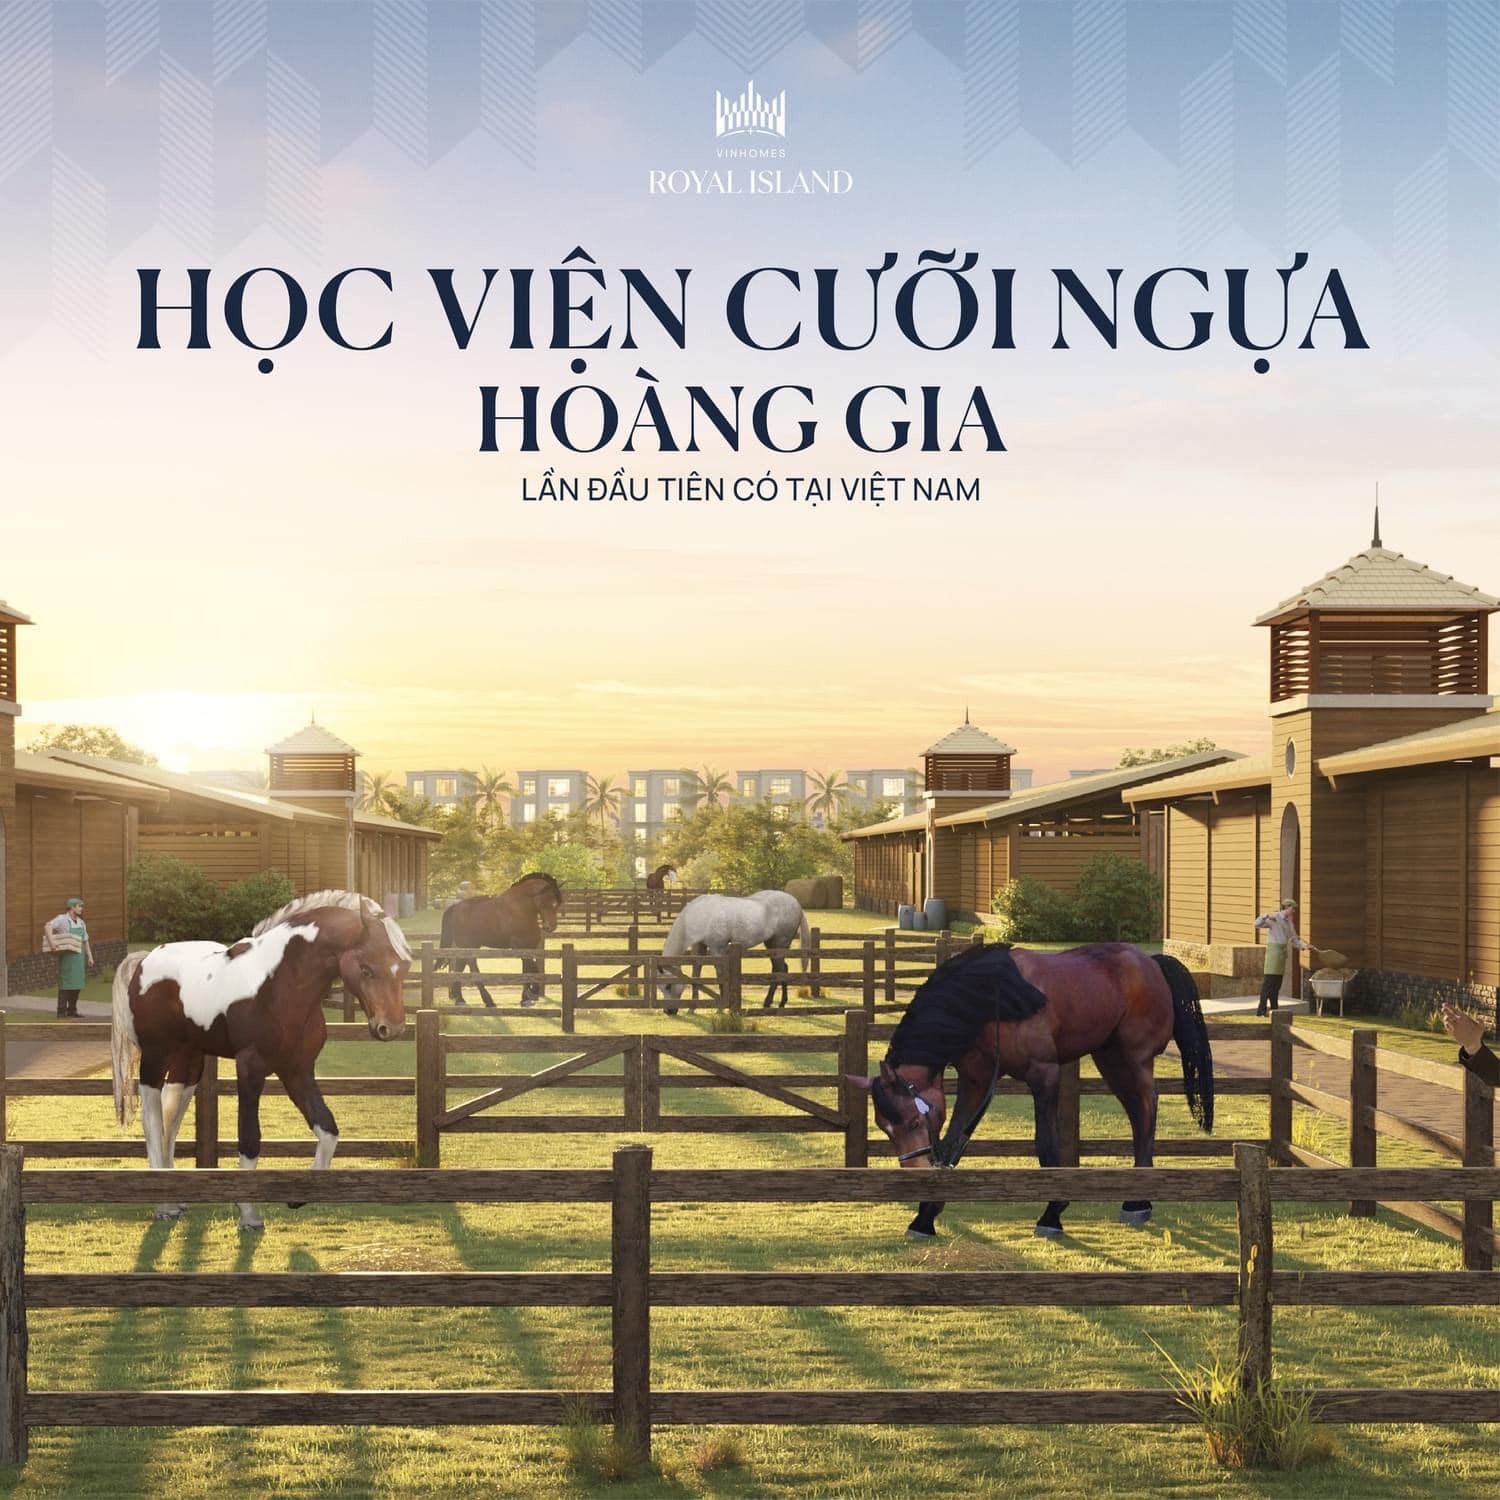 Học viện cưỡi ngựa Hoàng gia - Vinhomes Vũ Yên Hải Phòng